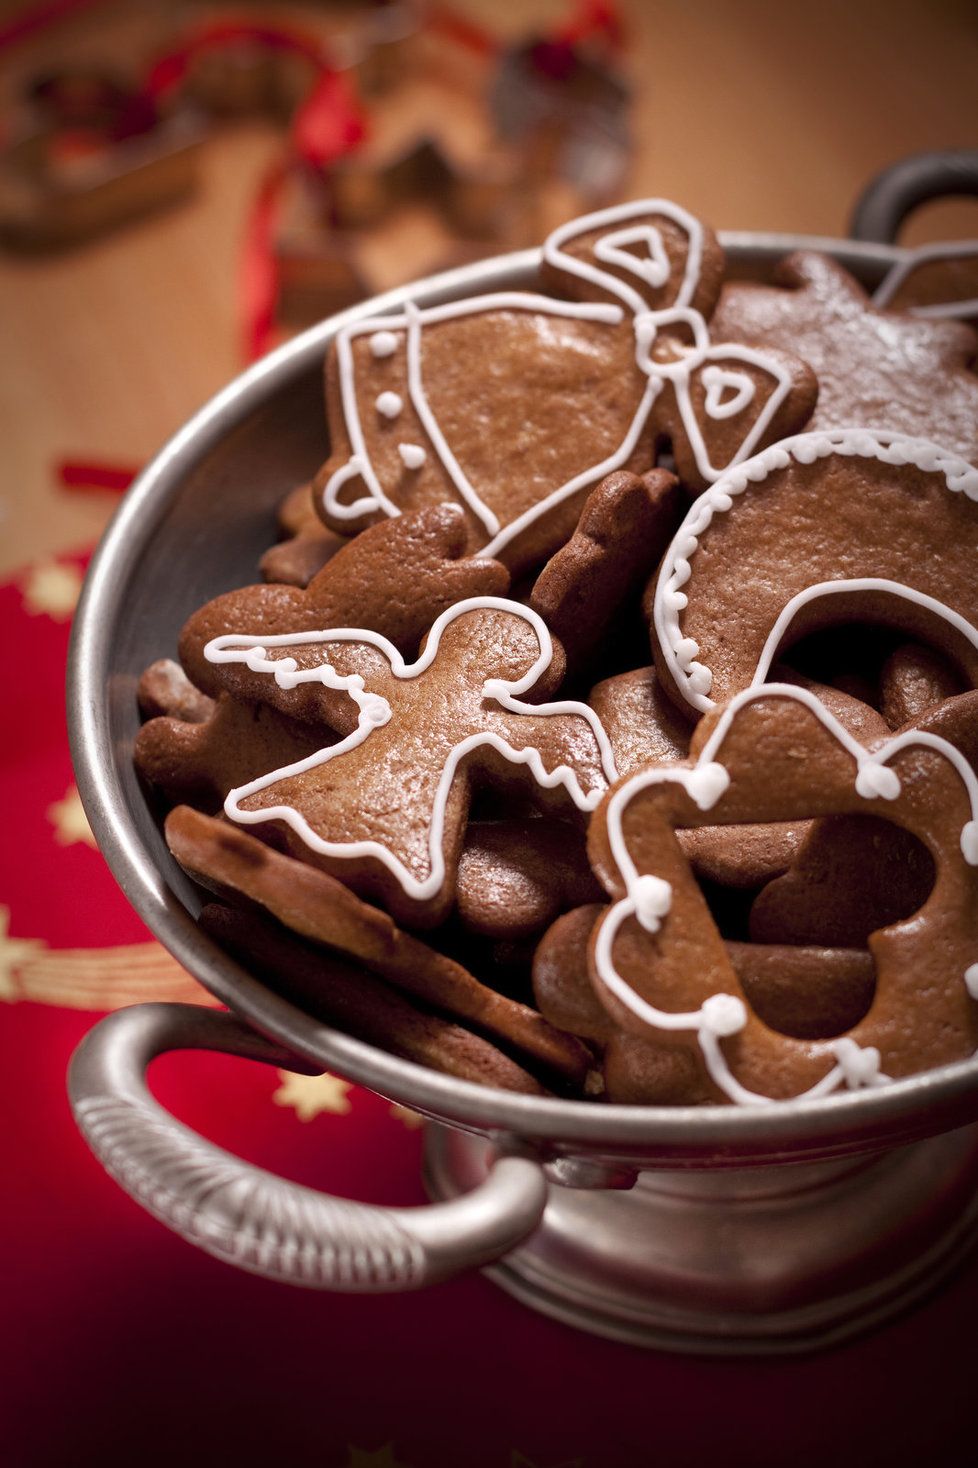 Vánoční cukroví letos zdraží zřejmě o 10%. Mohou za to vyšší ceny elektřiny, nedostatek medu nebo ořechů